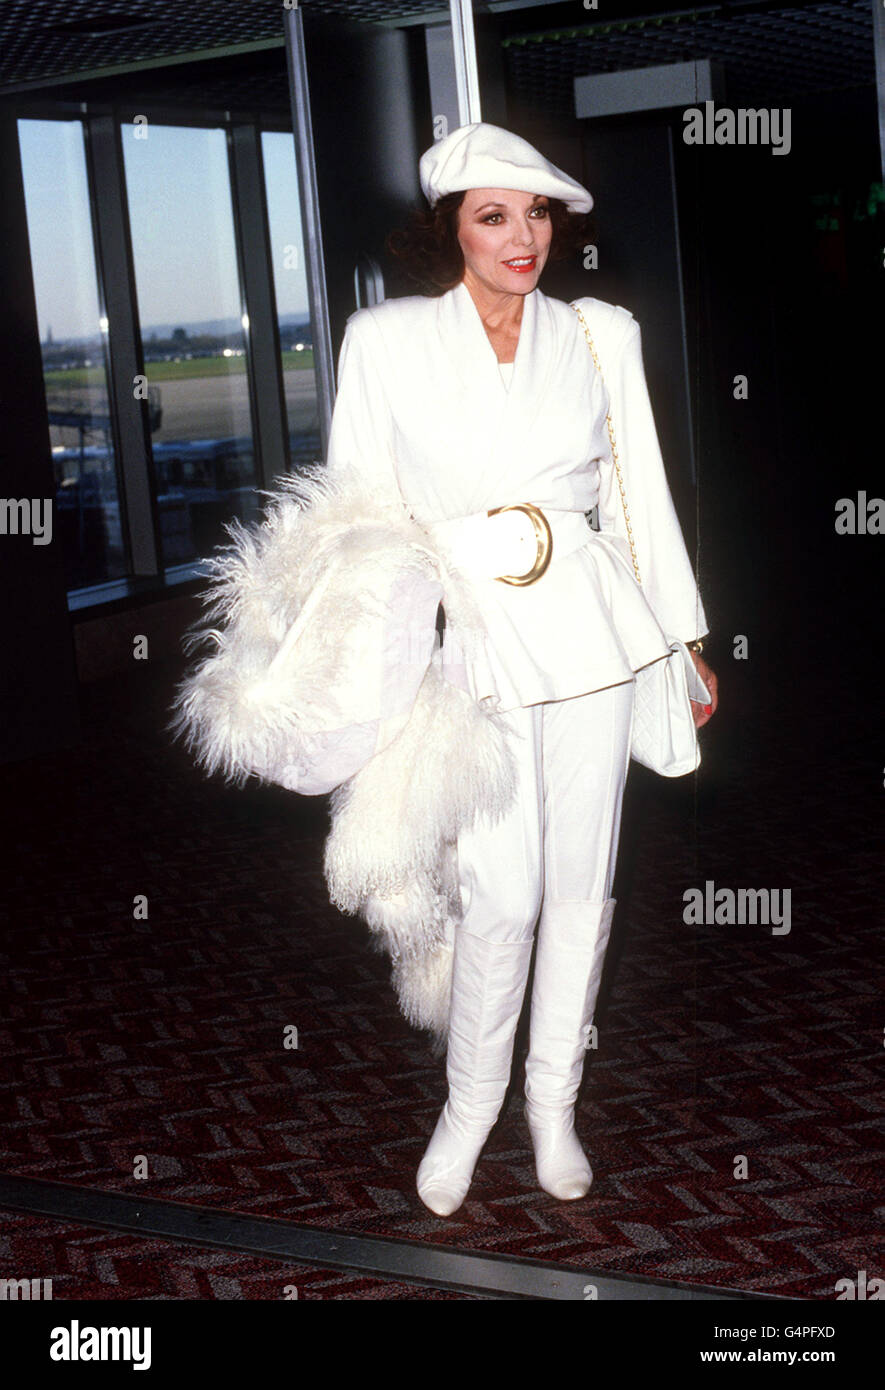 L'attrice britannica Joan Collins, regina delle stelle del sapone, è all'altezza della sua immagine glamour all'arrivo a Heathrow, Londra, da Los Angeles. Foto Stock